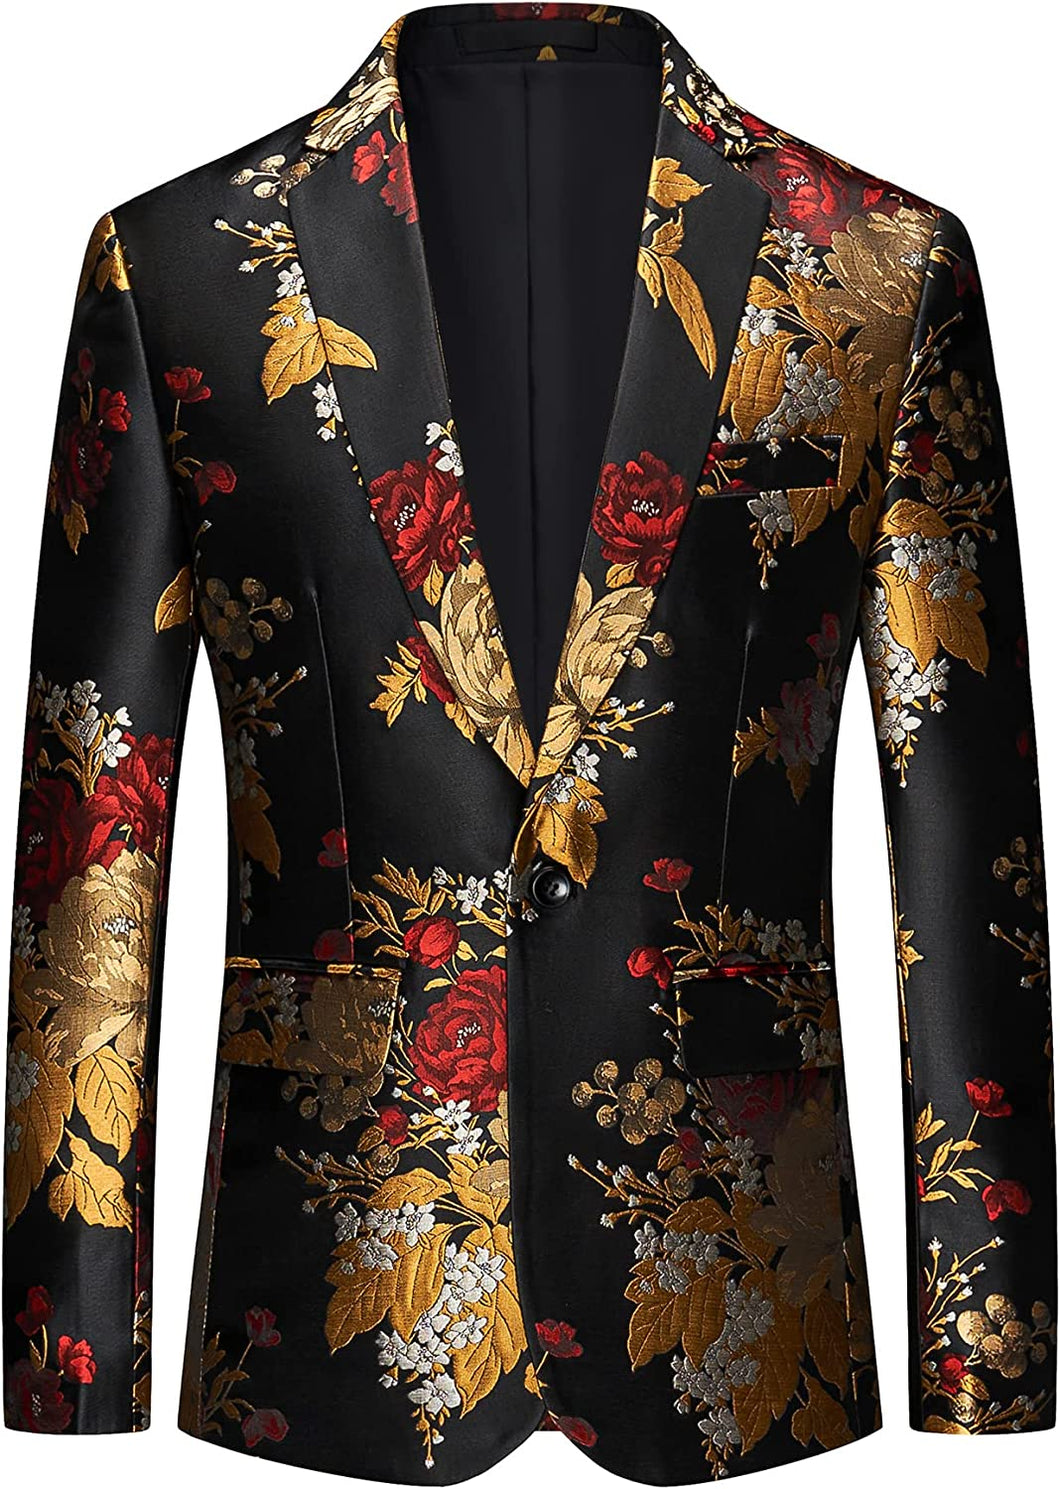 Men's Black & Gold Floral Long Sleeve Formal Blazer